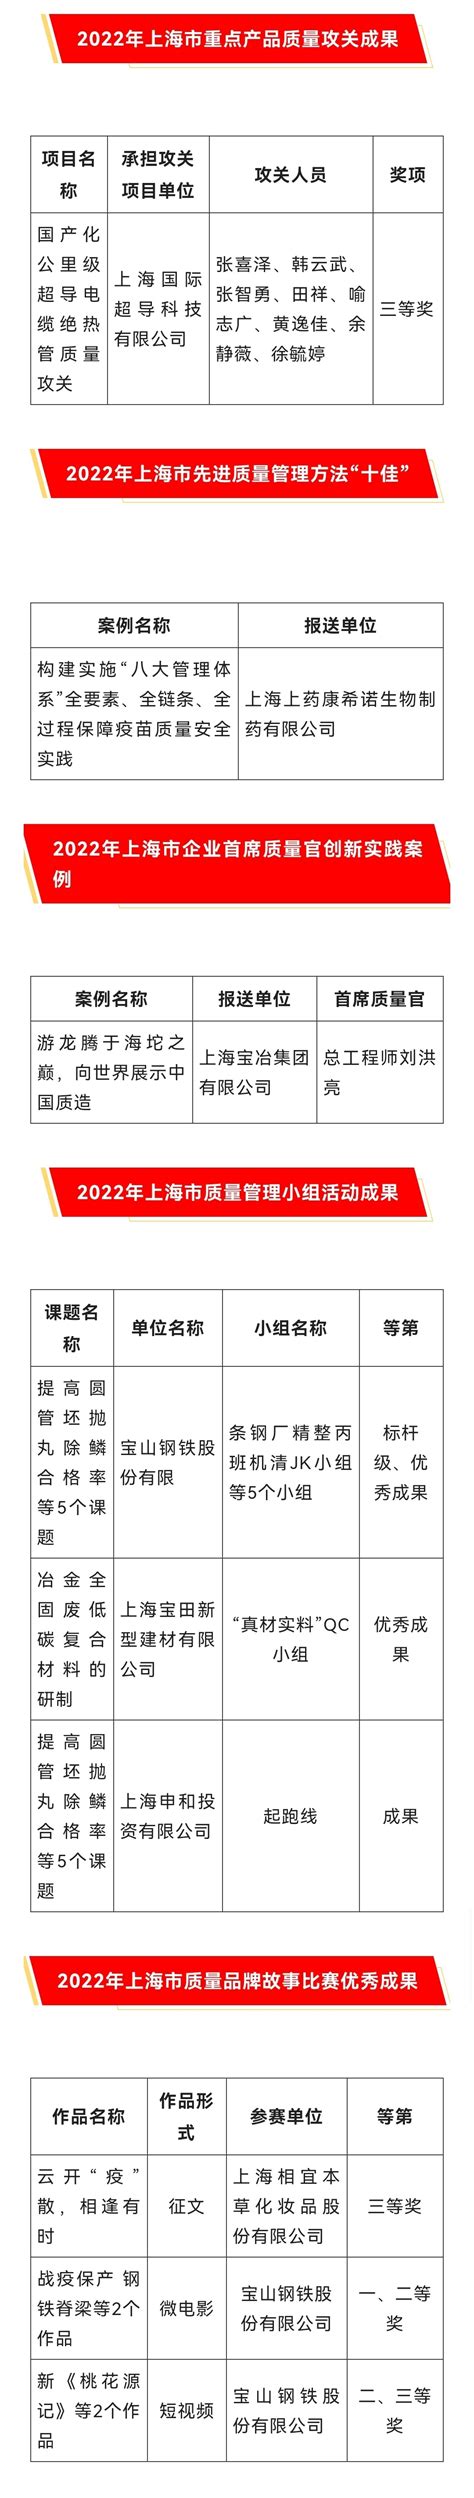 2022年宝山质量品牌建设取得多项成果_宝山动态_上海市宝山区人民政府